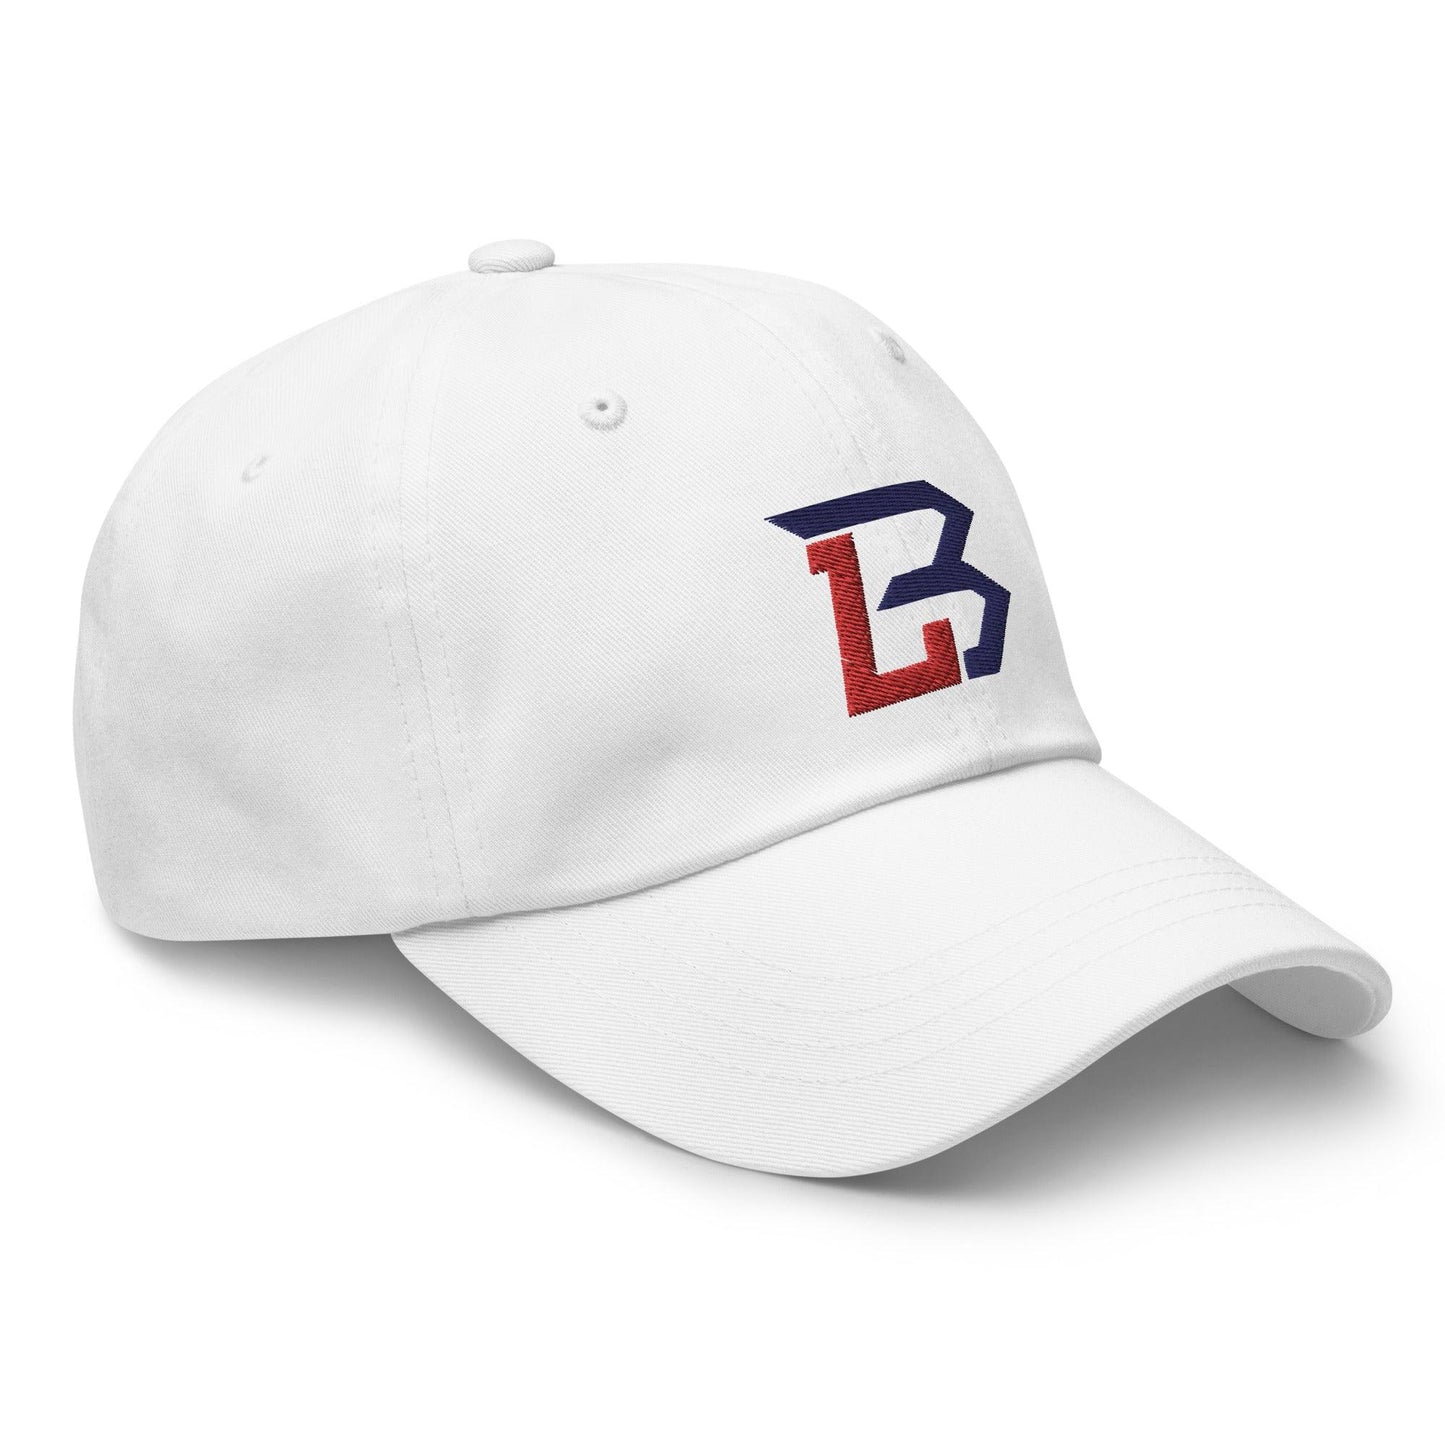 Brendon Little "Essential" hat - Fan Arch